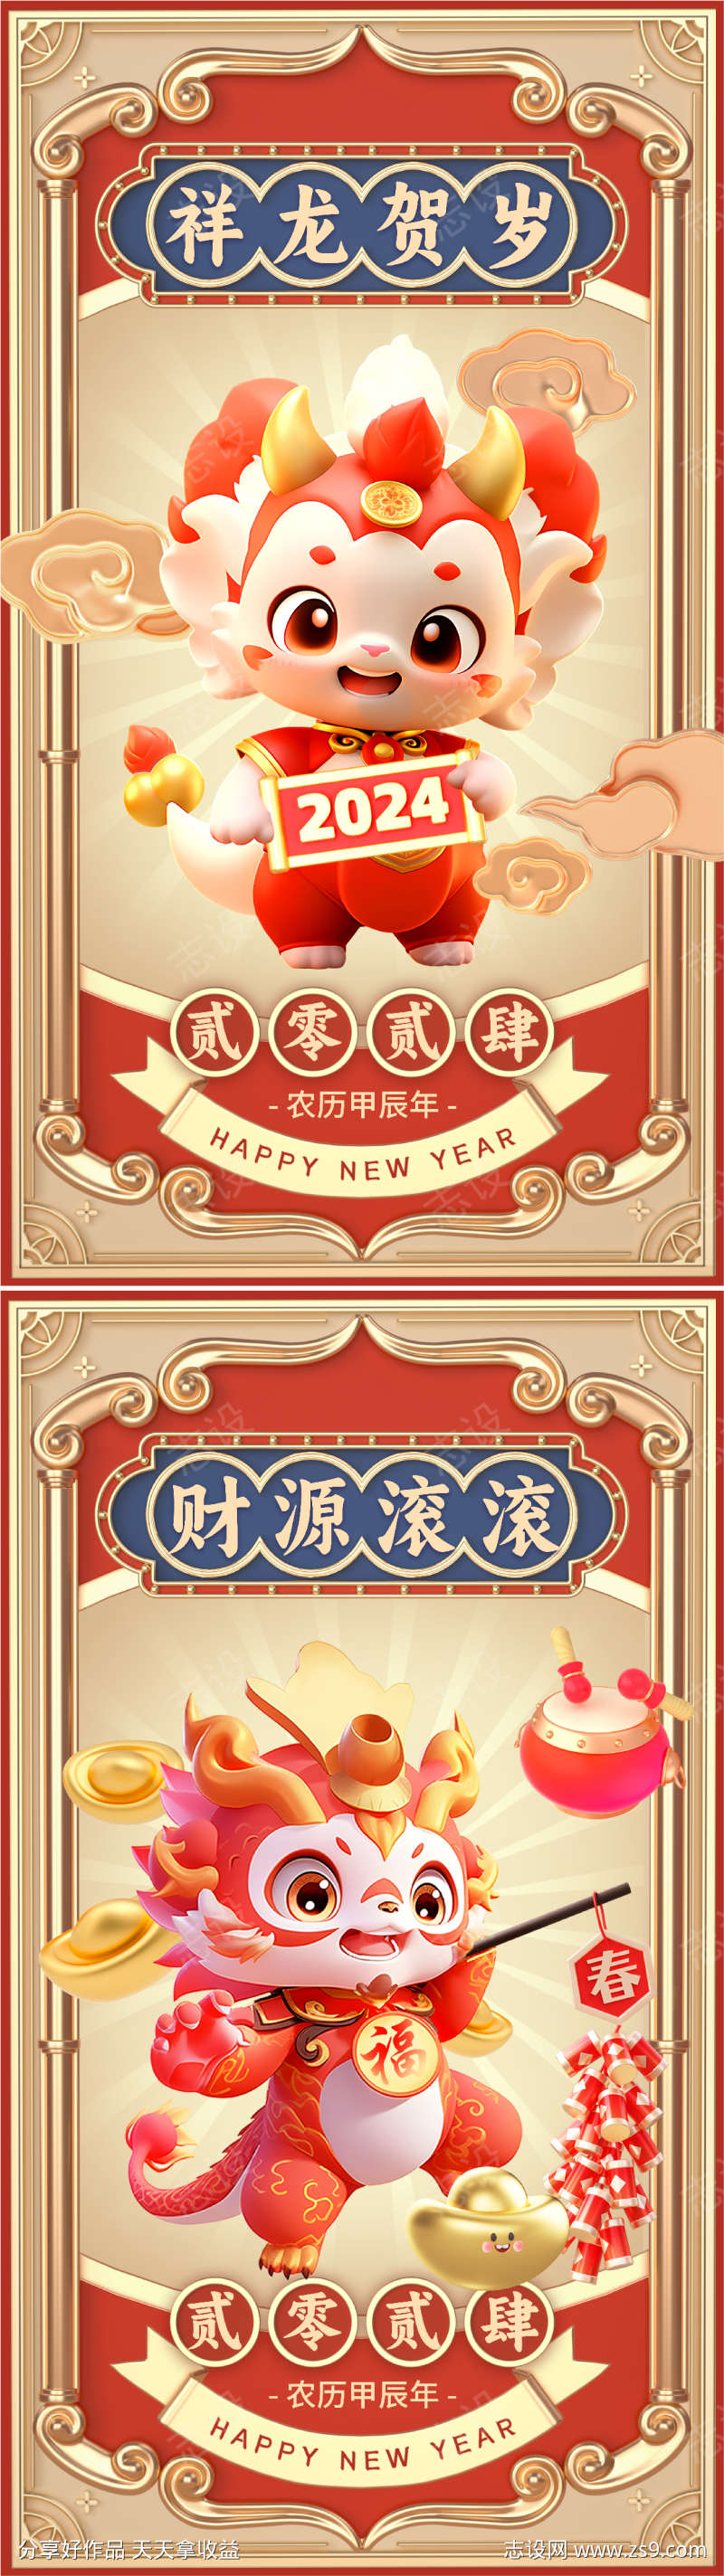 春节龙年祝福3D风格手机海报